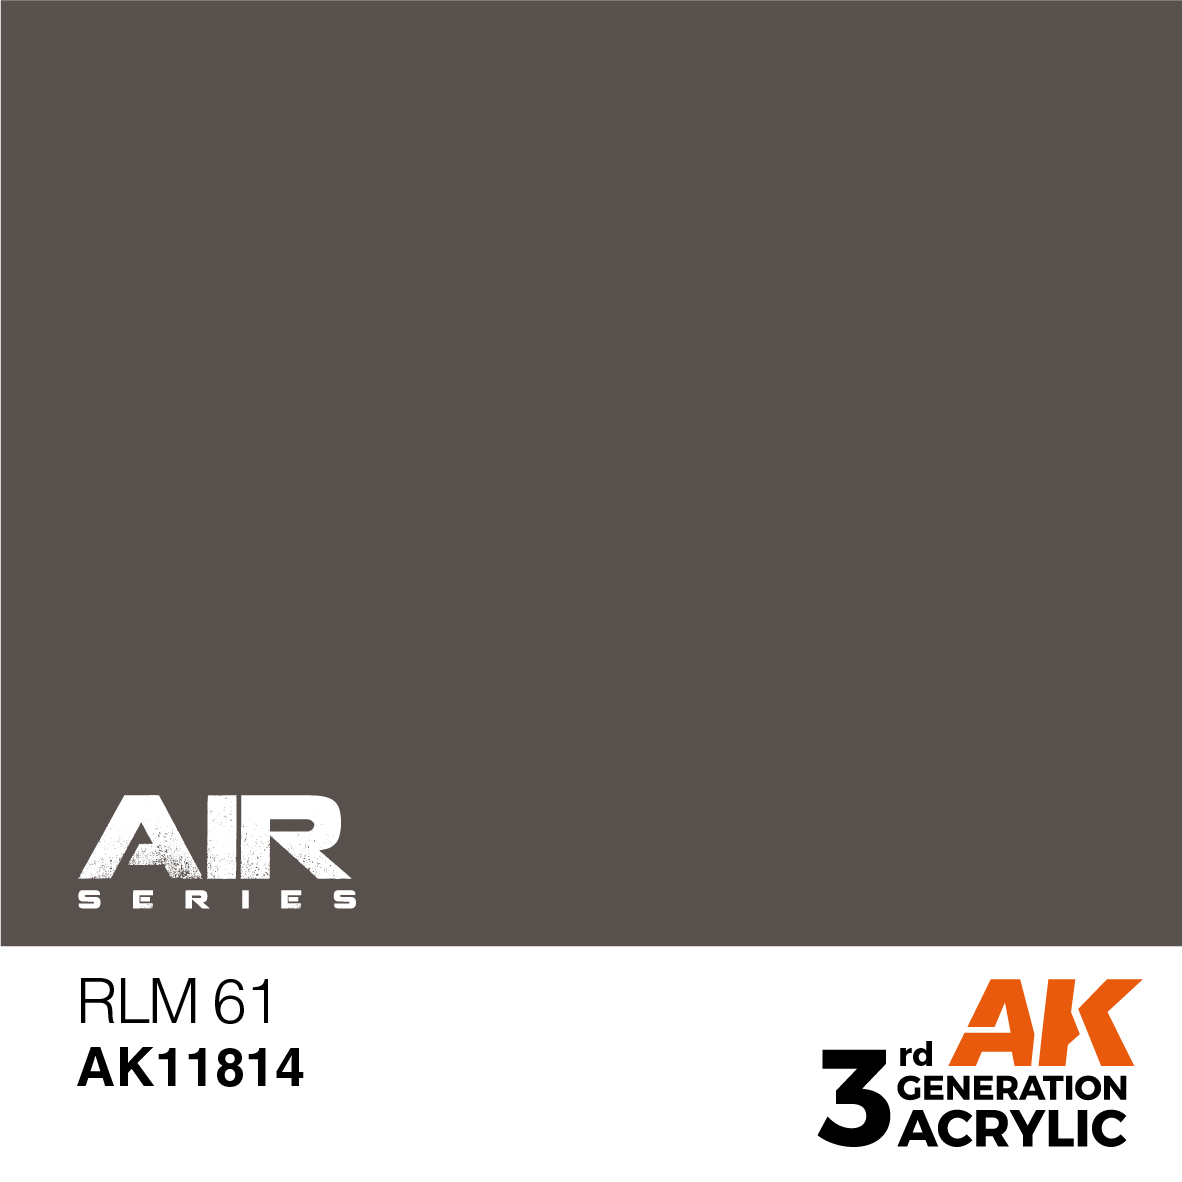 RLM 61 – AIR